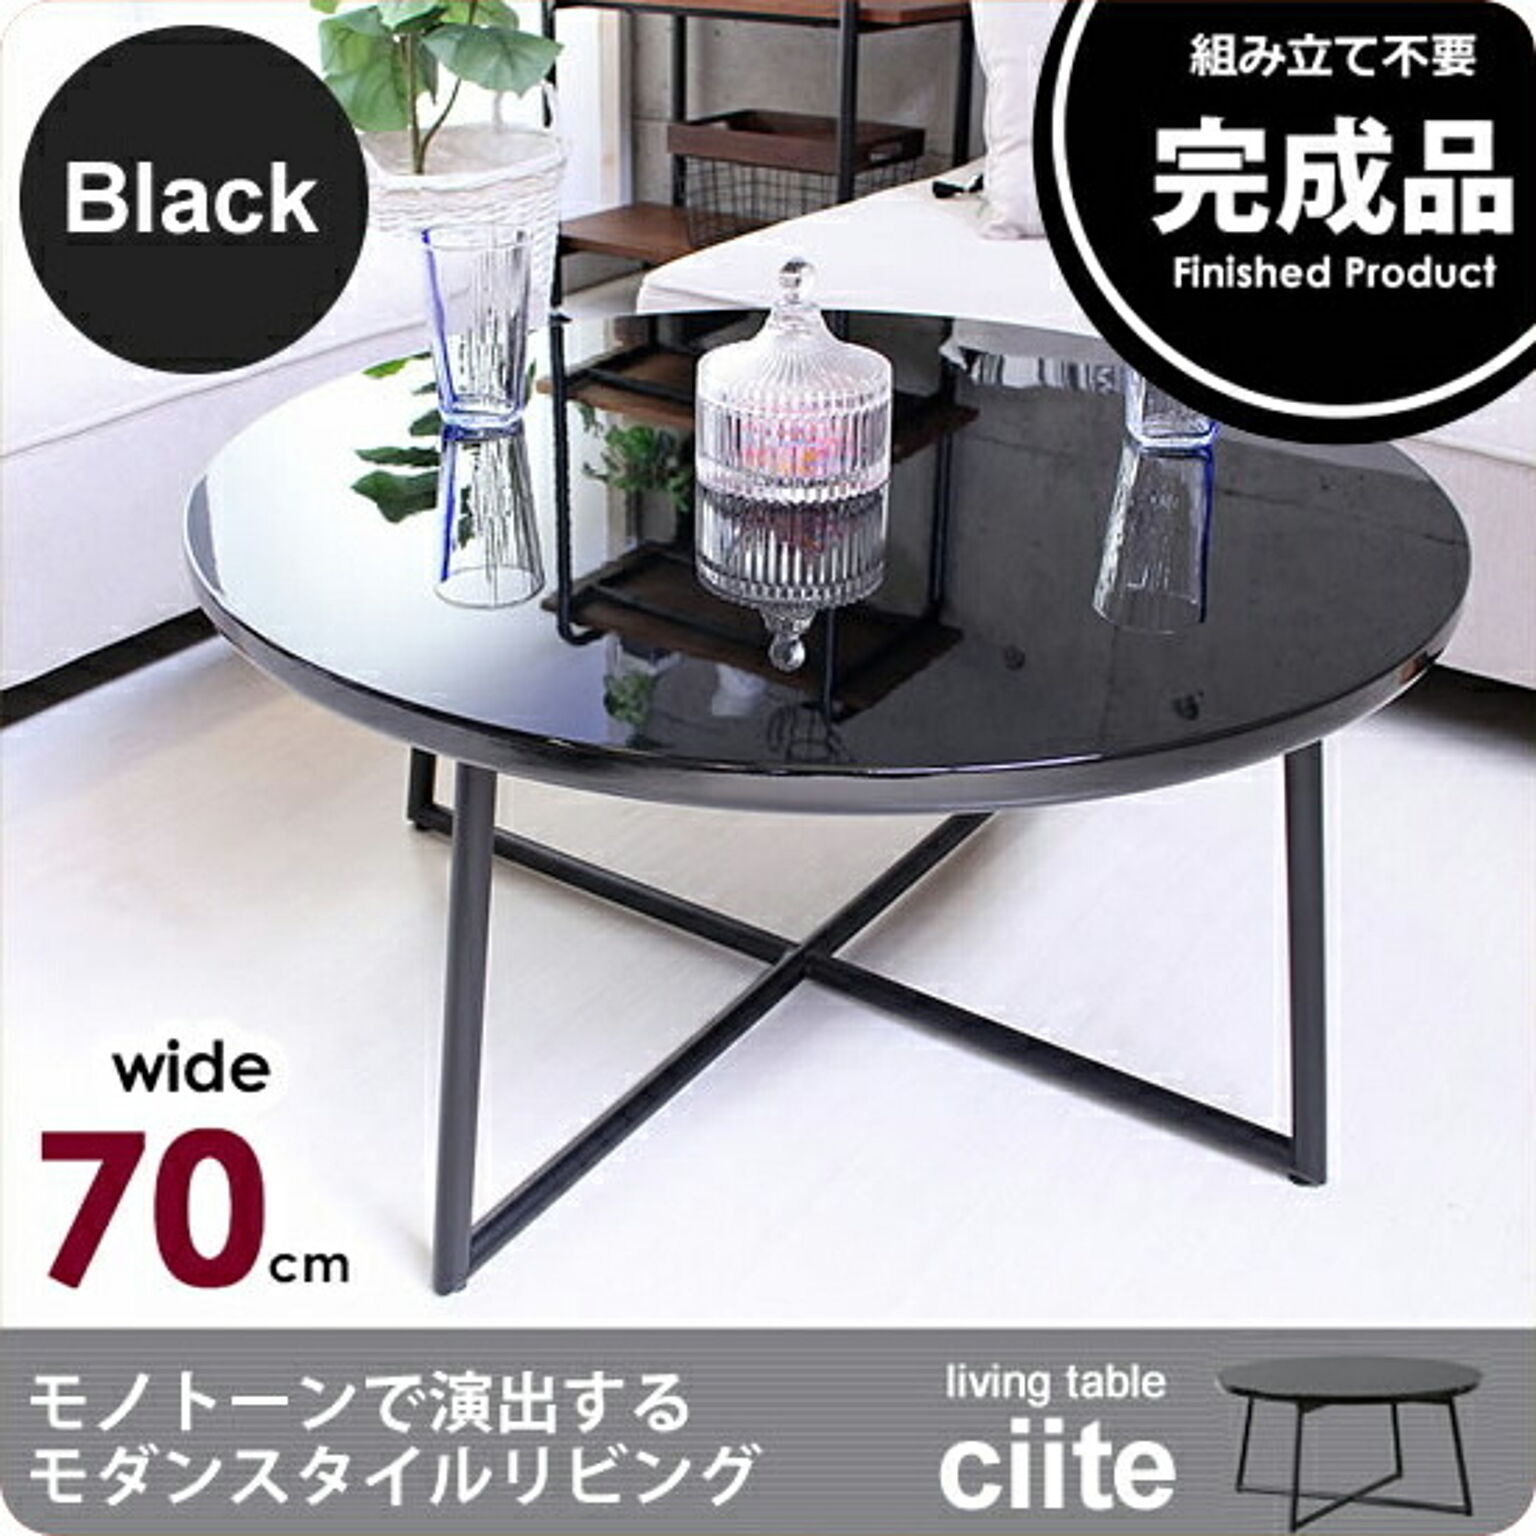 リビングテーブル 丸テーブル 円形 ラウンド 70cm ： ブラック BK【ciite】 ブラック(black) (アーバン) センターテーブル ローテーブル 